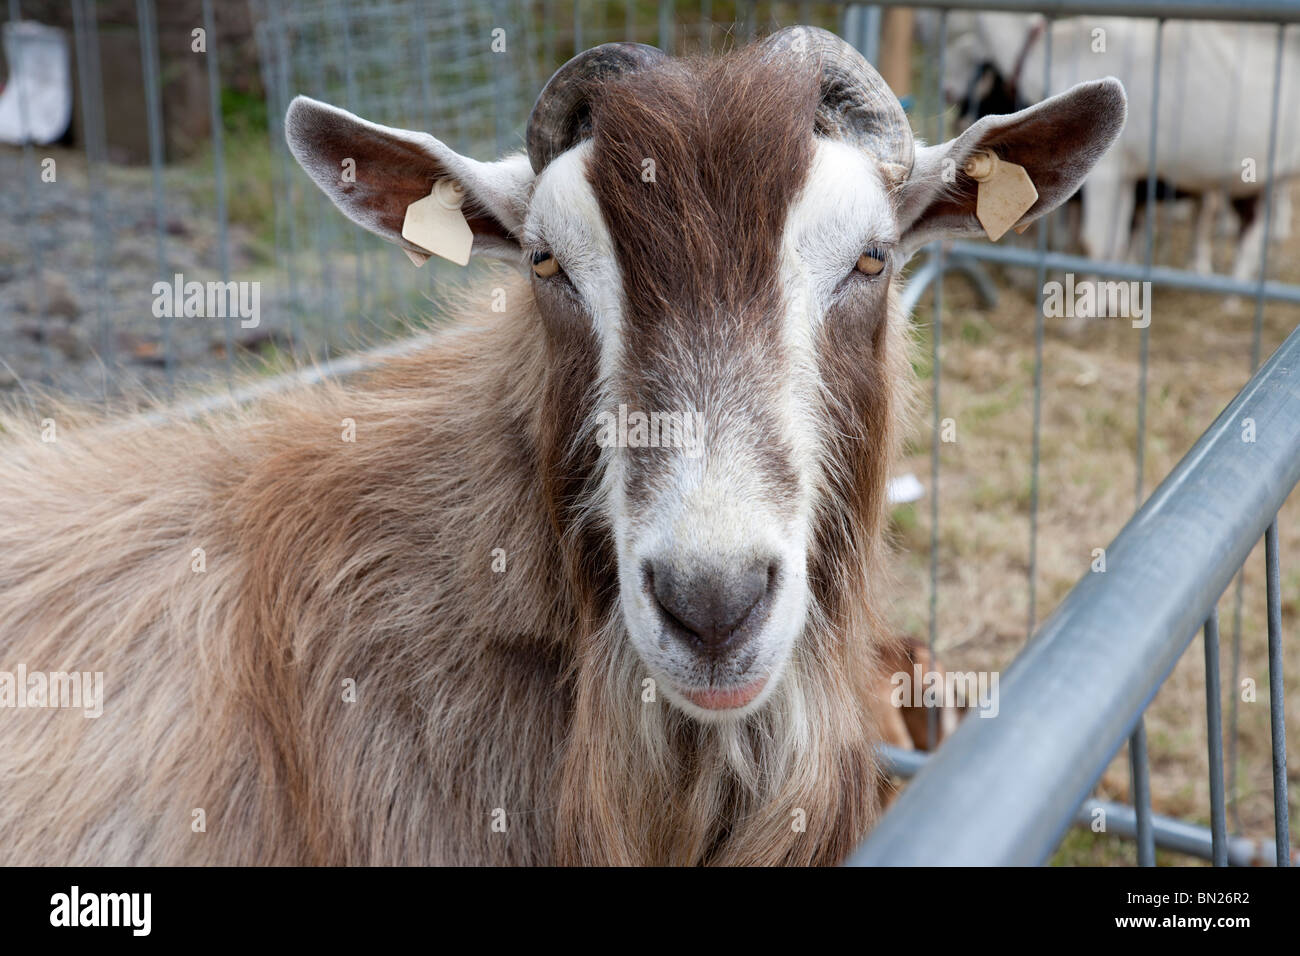 Caprone in animali domestici angolo mostra agricola Limerick Irlanda Foto Stock